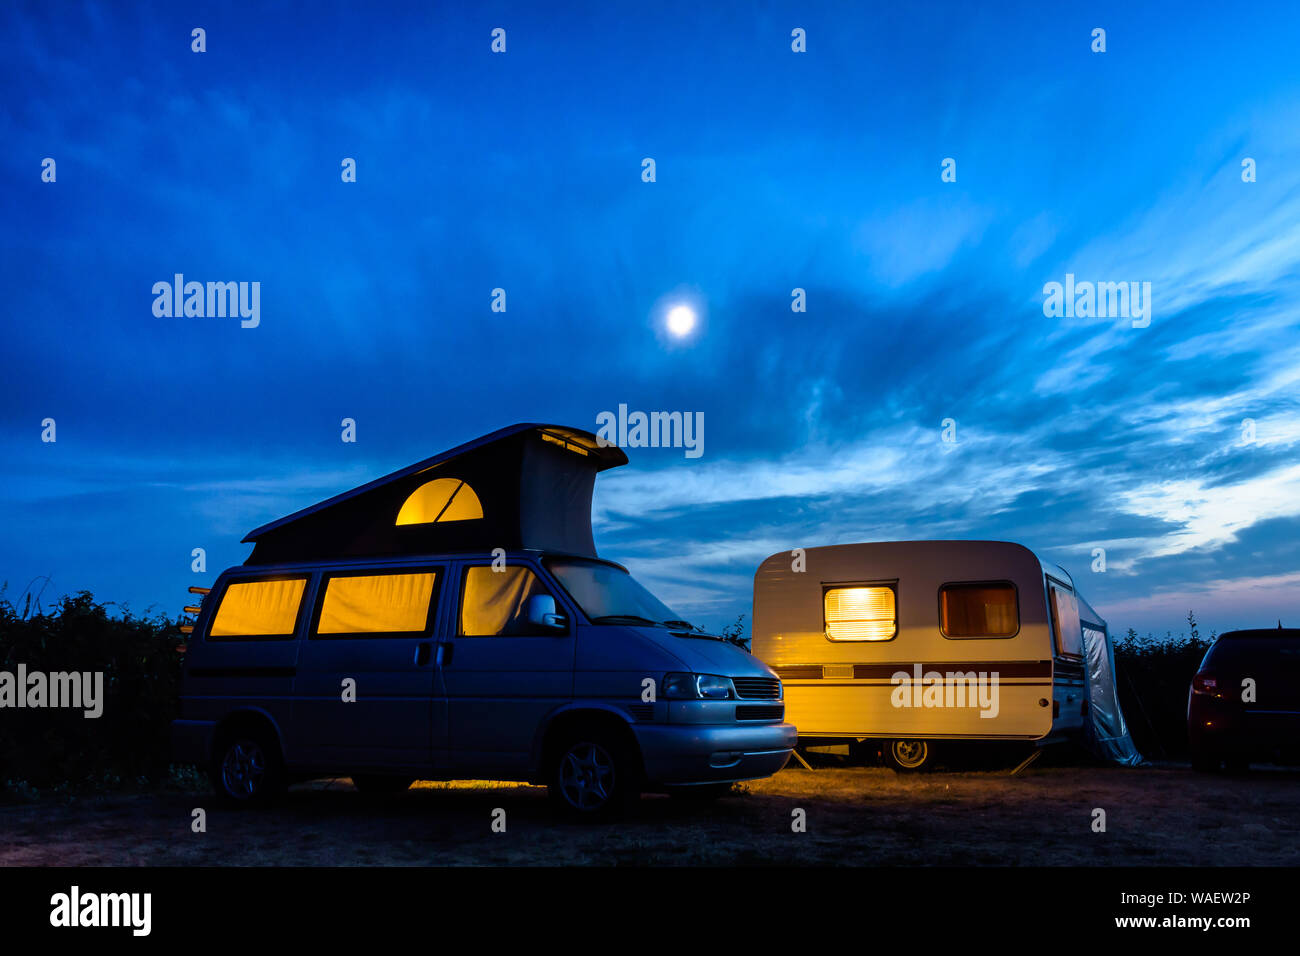 Un piccolo camper parcheggiato a fianco di un'annata roulotte in un campeggio, sia illuminato dall'interno al calar della sera con la luna risplende in un cielo tempestoso. Foto Stock